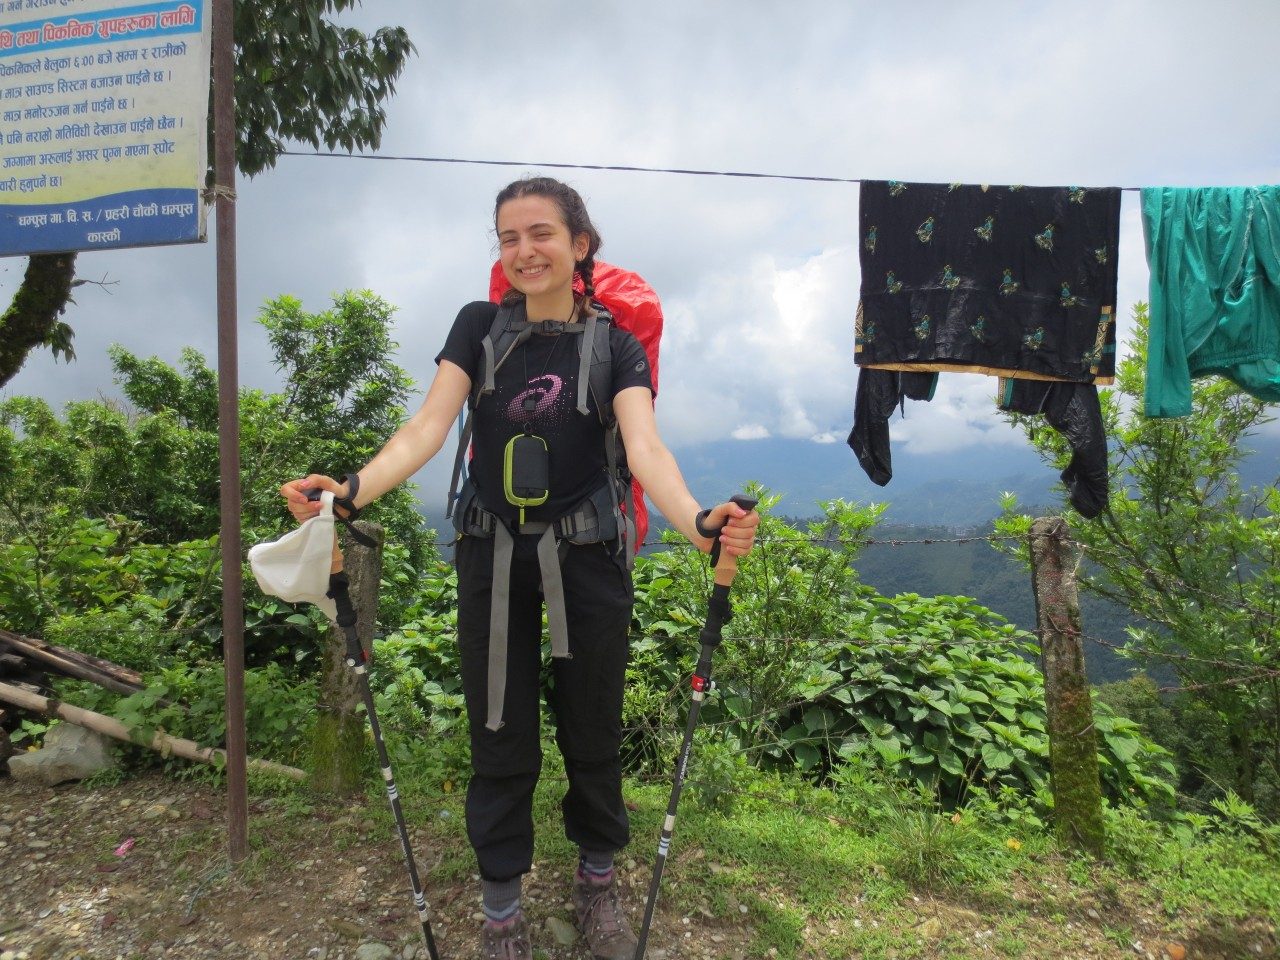 Provinsal's trek through Nepal was her "survivor experience."